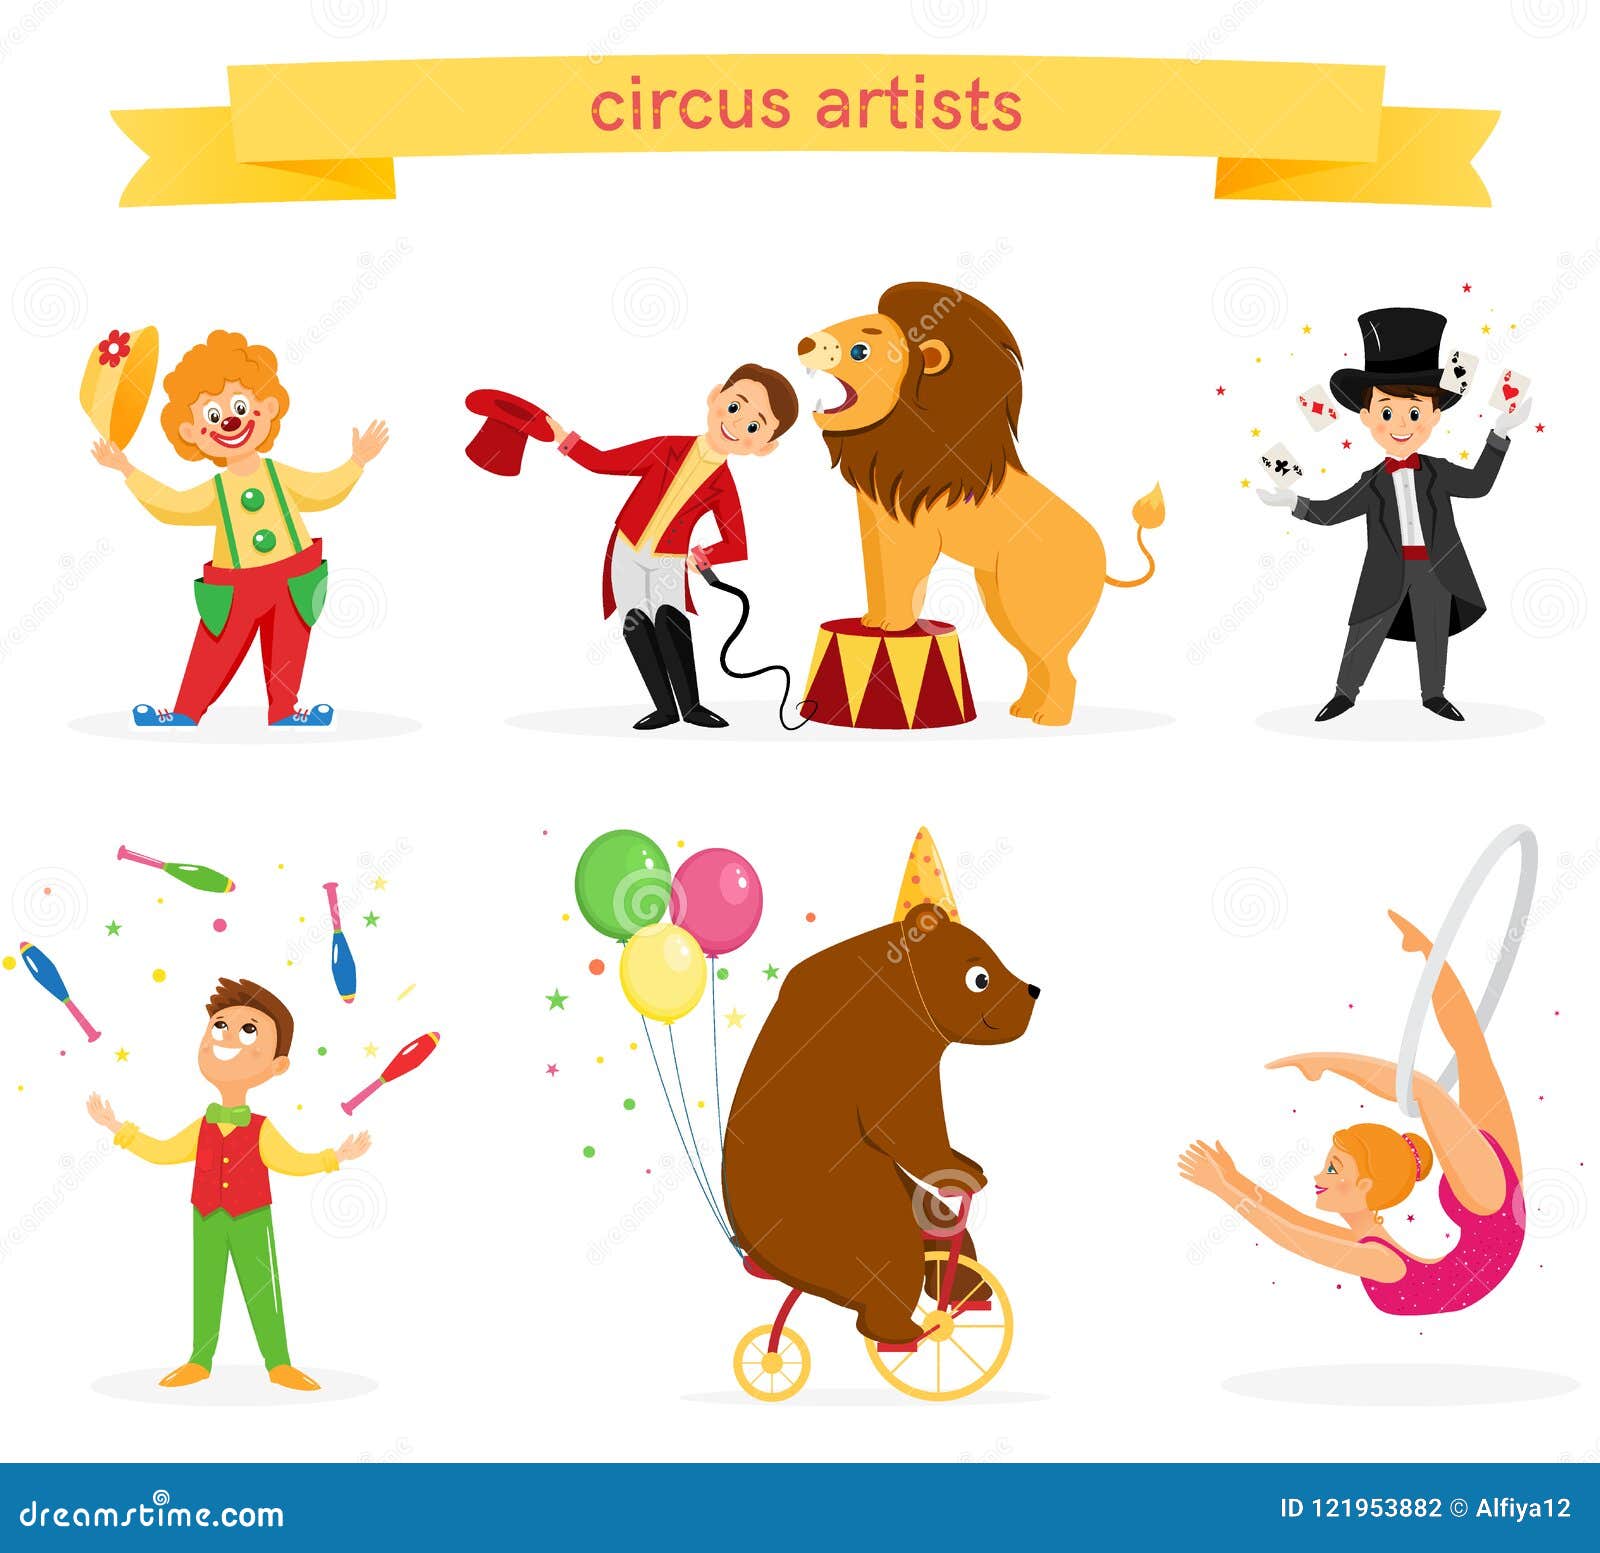 a set of circus artists